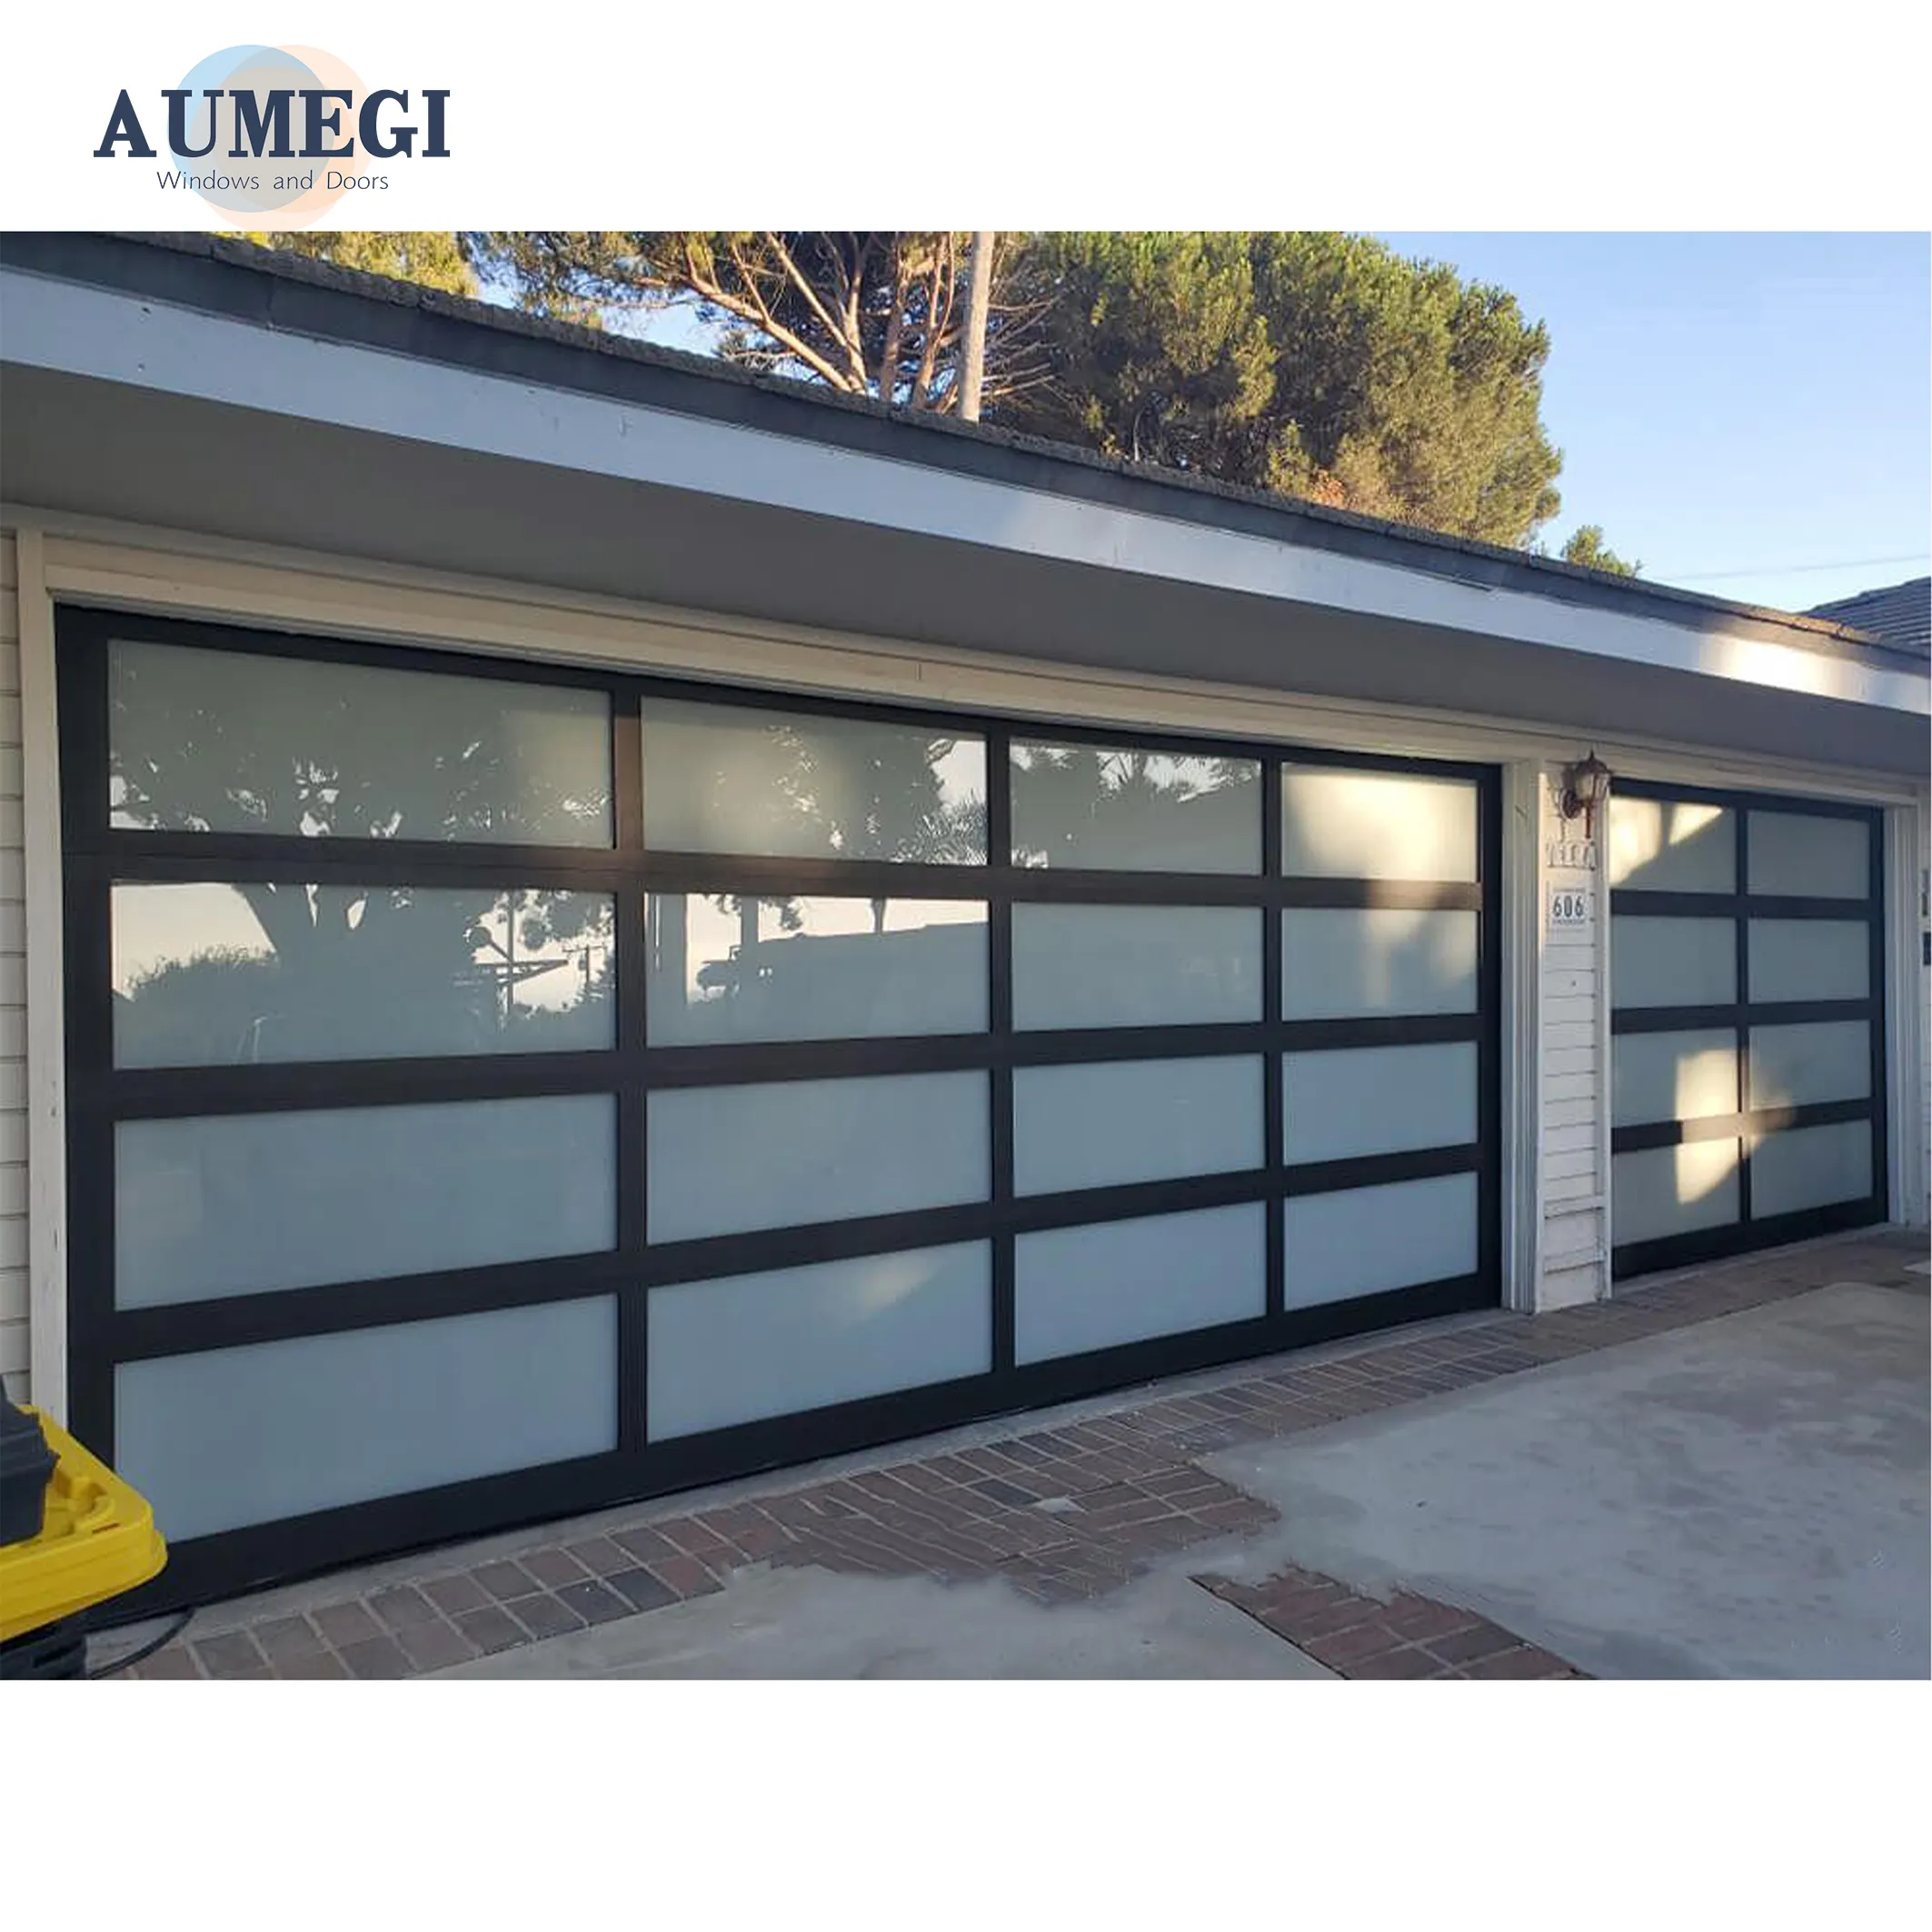 Aumegi For House Diy Aluminum Double Garage Door Panels Garage Doors For Houses Interior Electric Garage Door